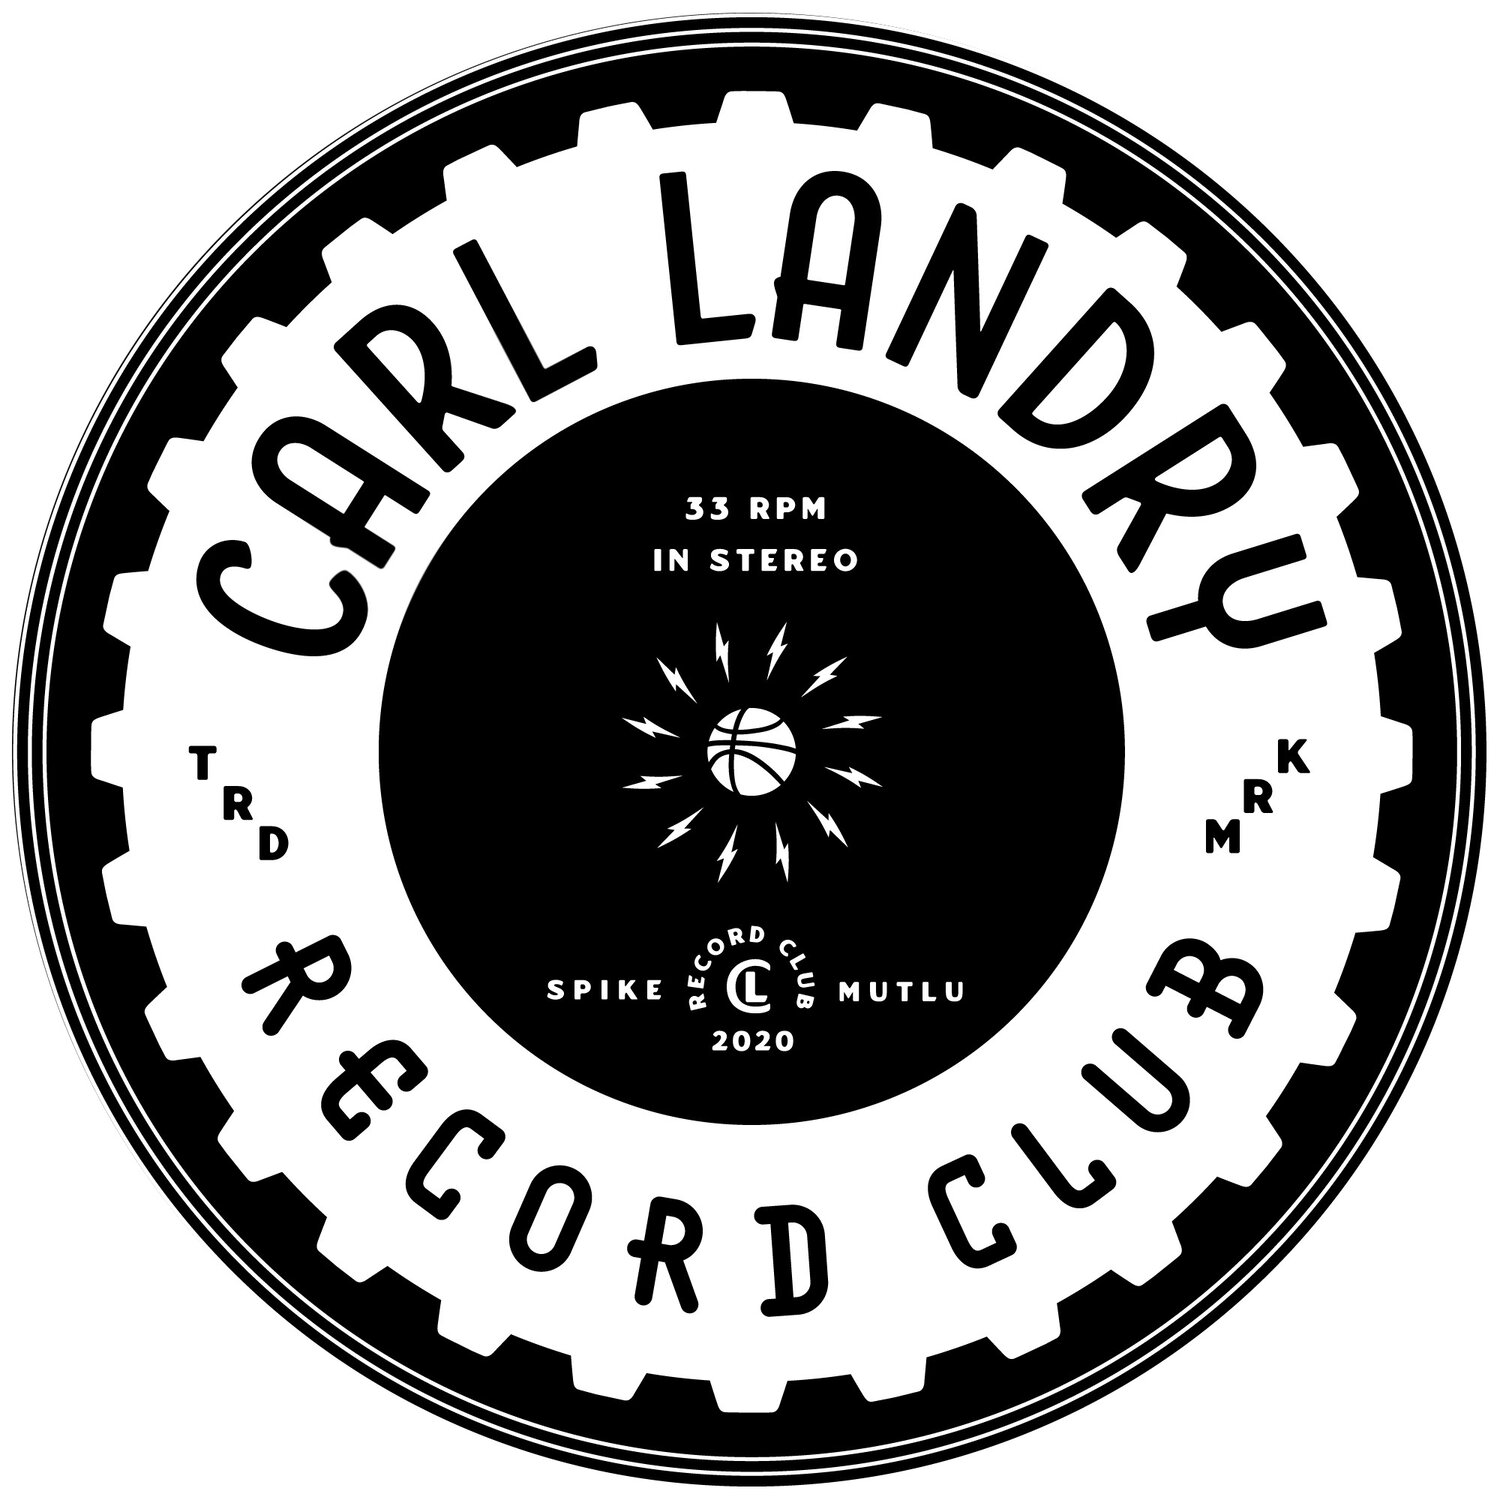 Carl Landry Record Club